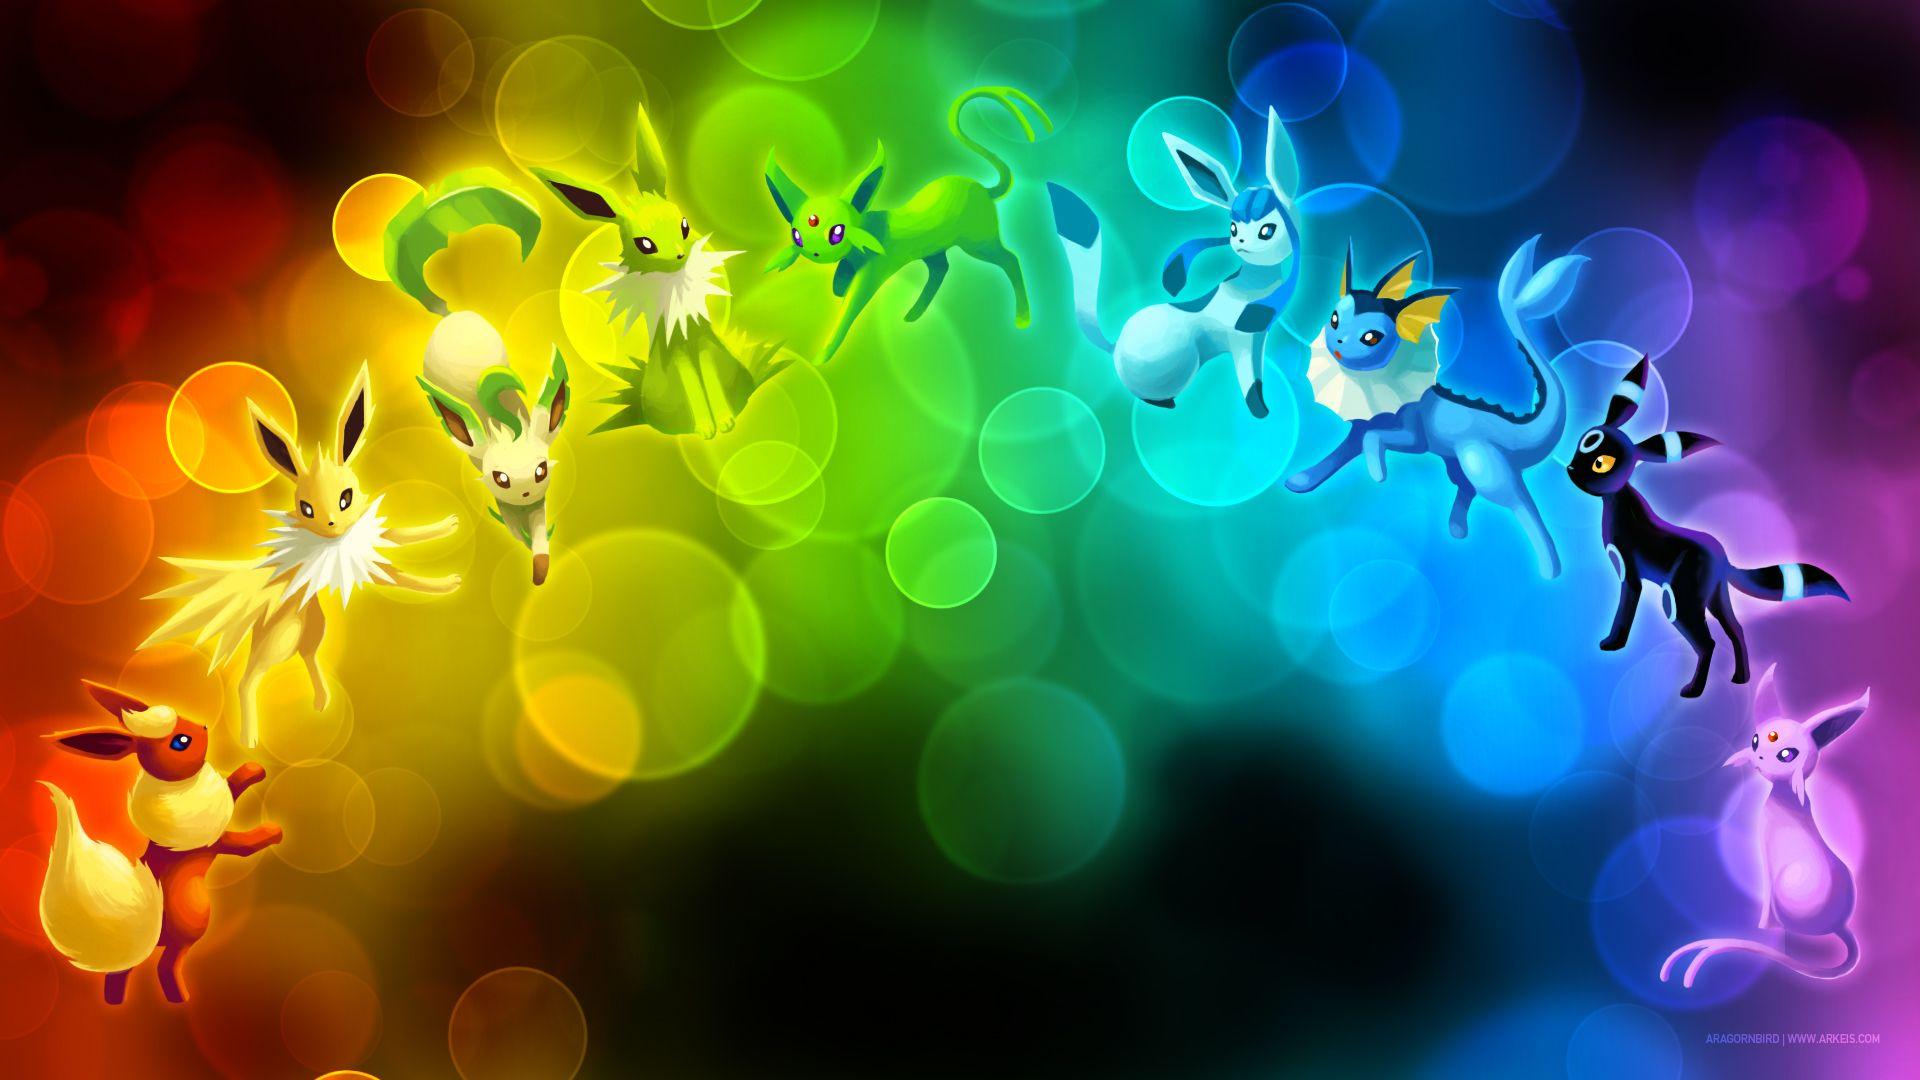 Hình nền pokemon eevee: Đừng bỏ lỡ cơ hội khoe sở thích với bộ sưu tập hình nền Pokemon Eevee cực kì sinh động và tươi sáng này. Với những chú pokemon sỡ hữu nhiều tư thế và tính cách đa dạng, bạn chắc chắn sẽ tìm được hình nền ưng ý cho màn hình điện thoại hay máy tính của mình.